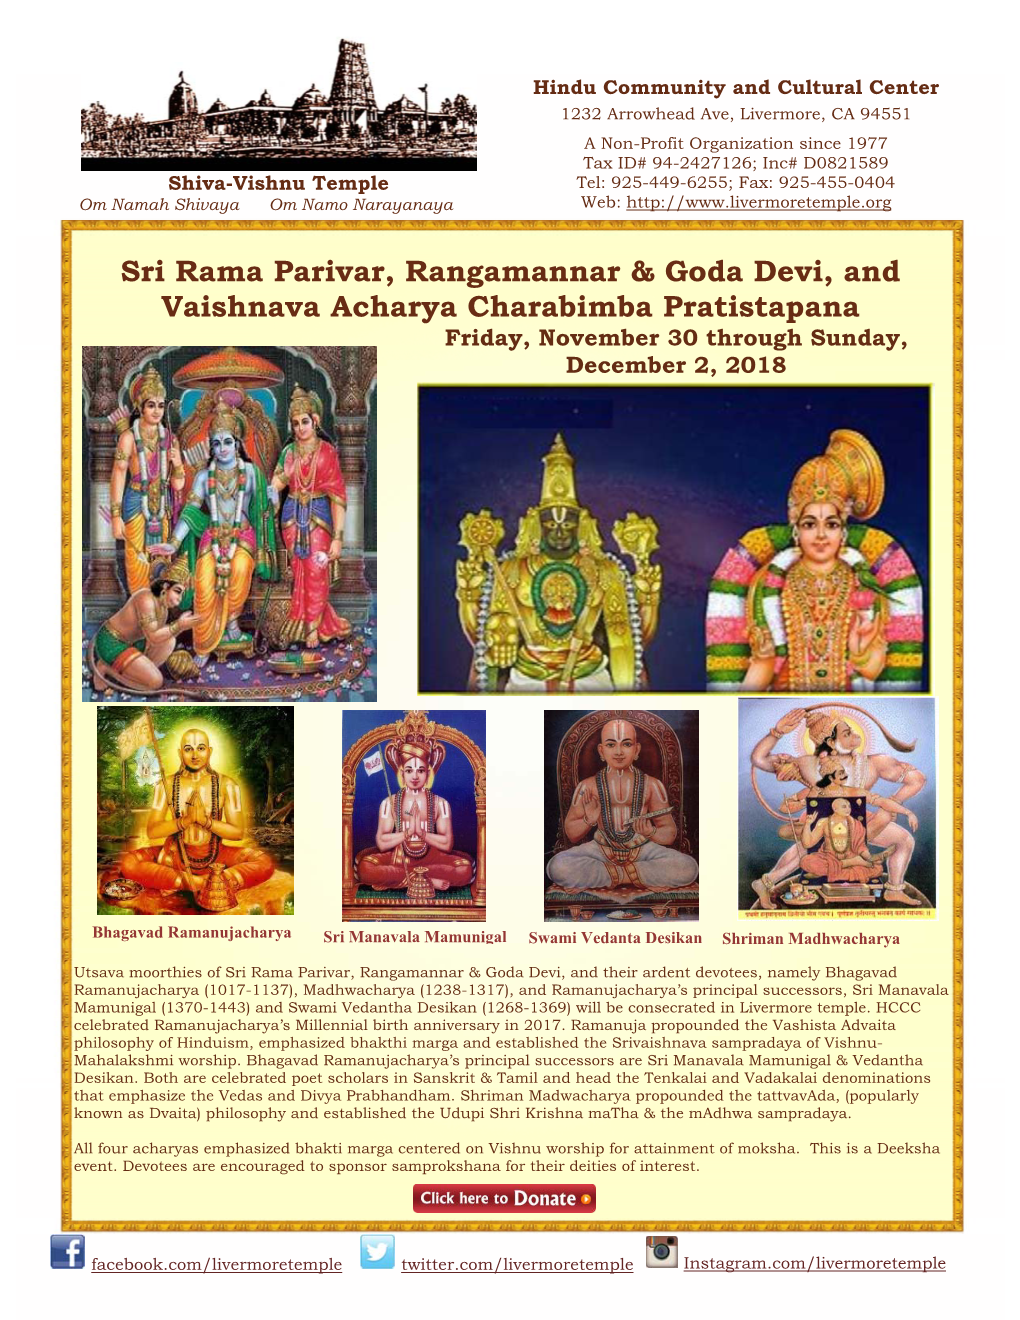 Sri Rama Parivar, Rangamannar & Goda Devi, and Vaishnava Acharya